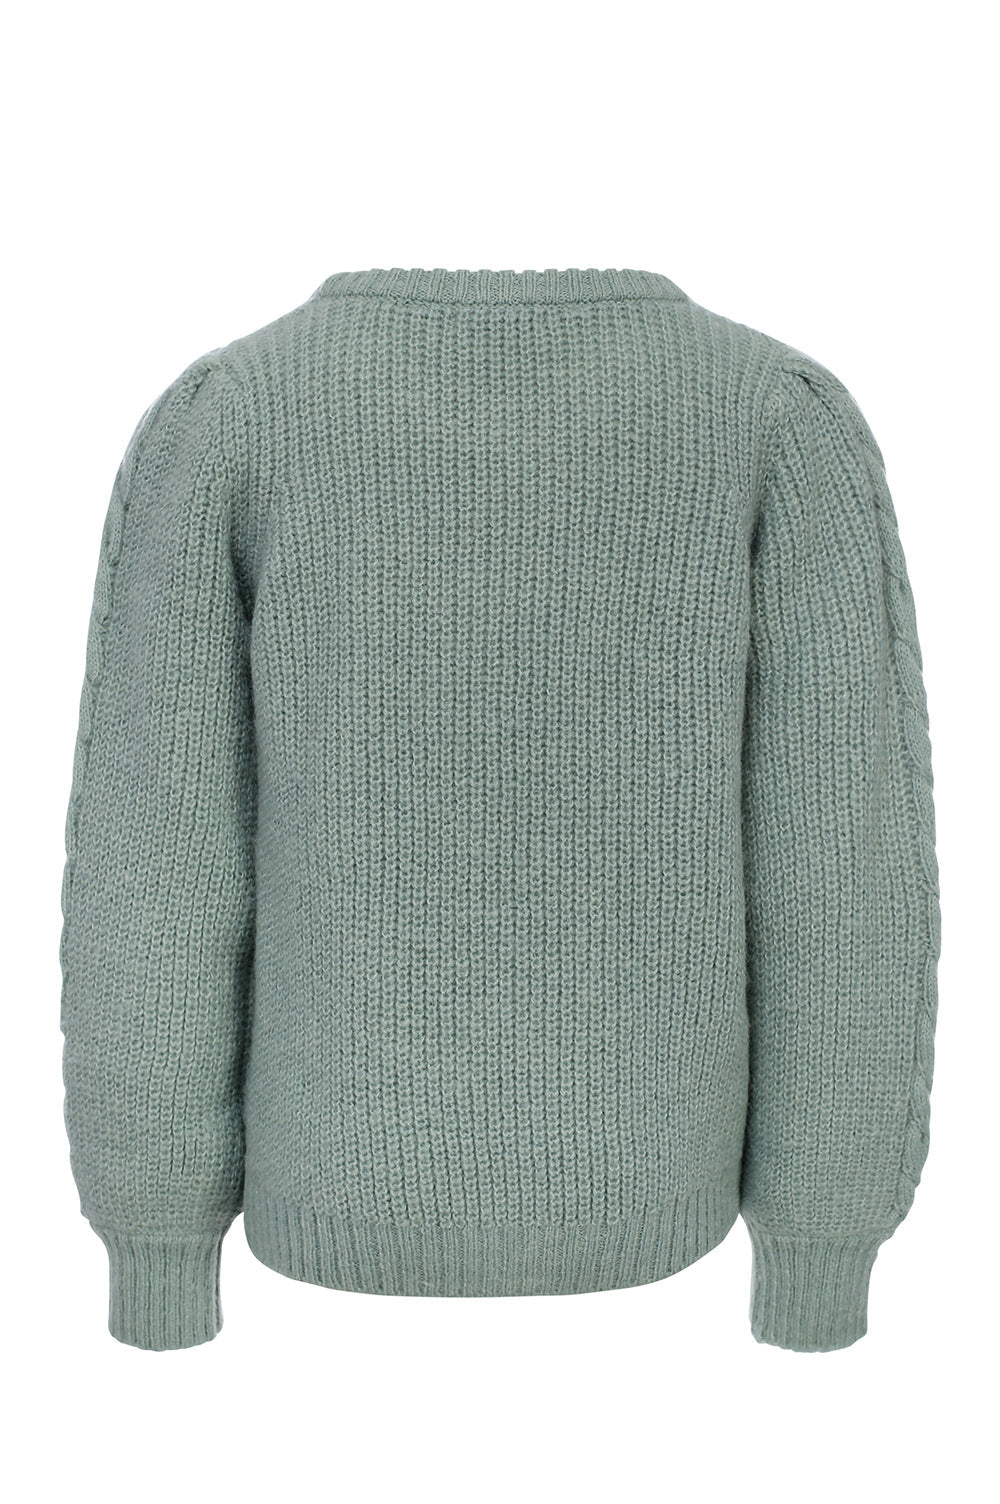 Meisjes Knitted Pullover van LOOXS Little in de kleur AQUA GREEN in maat 128.